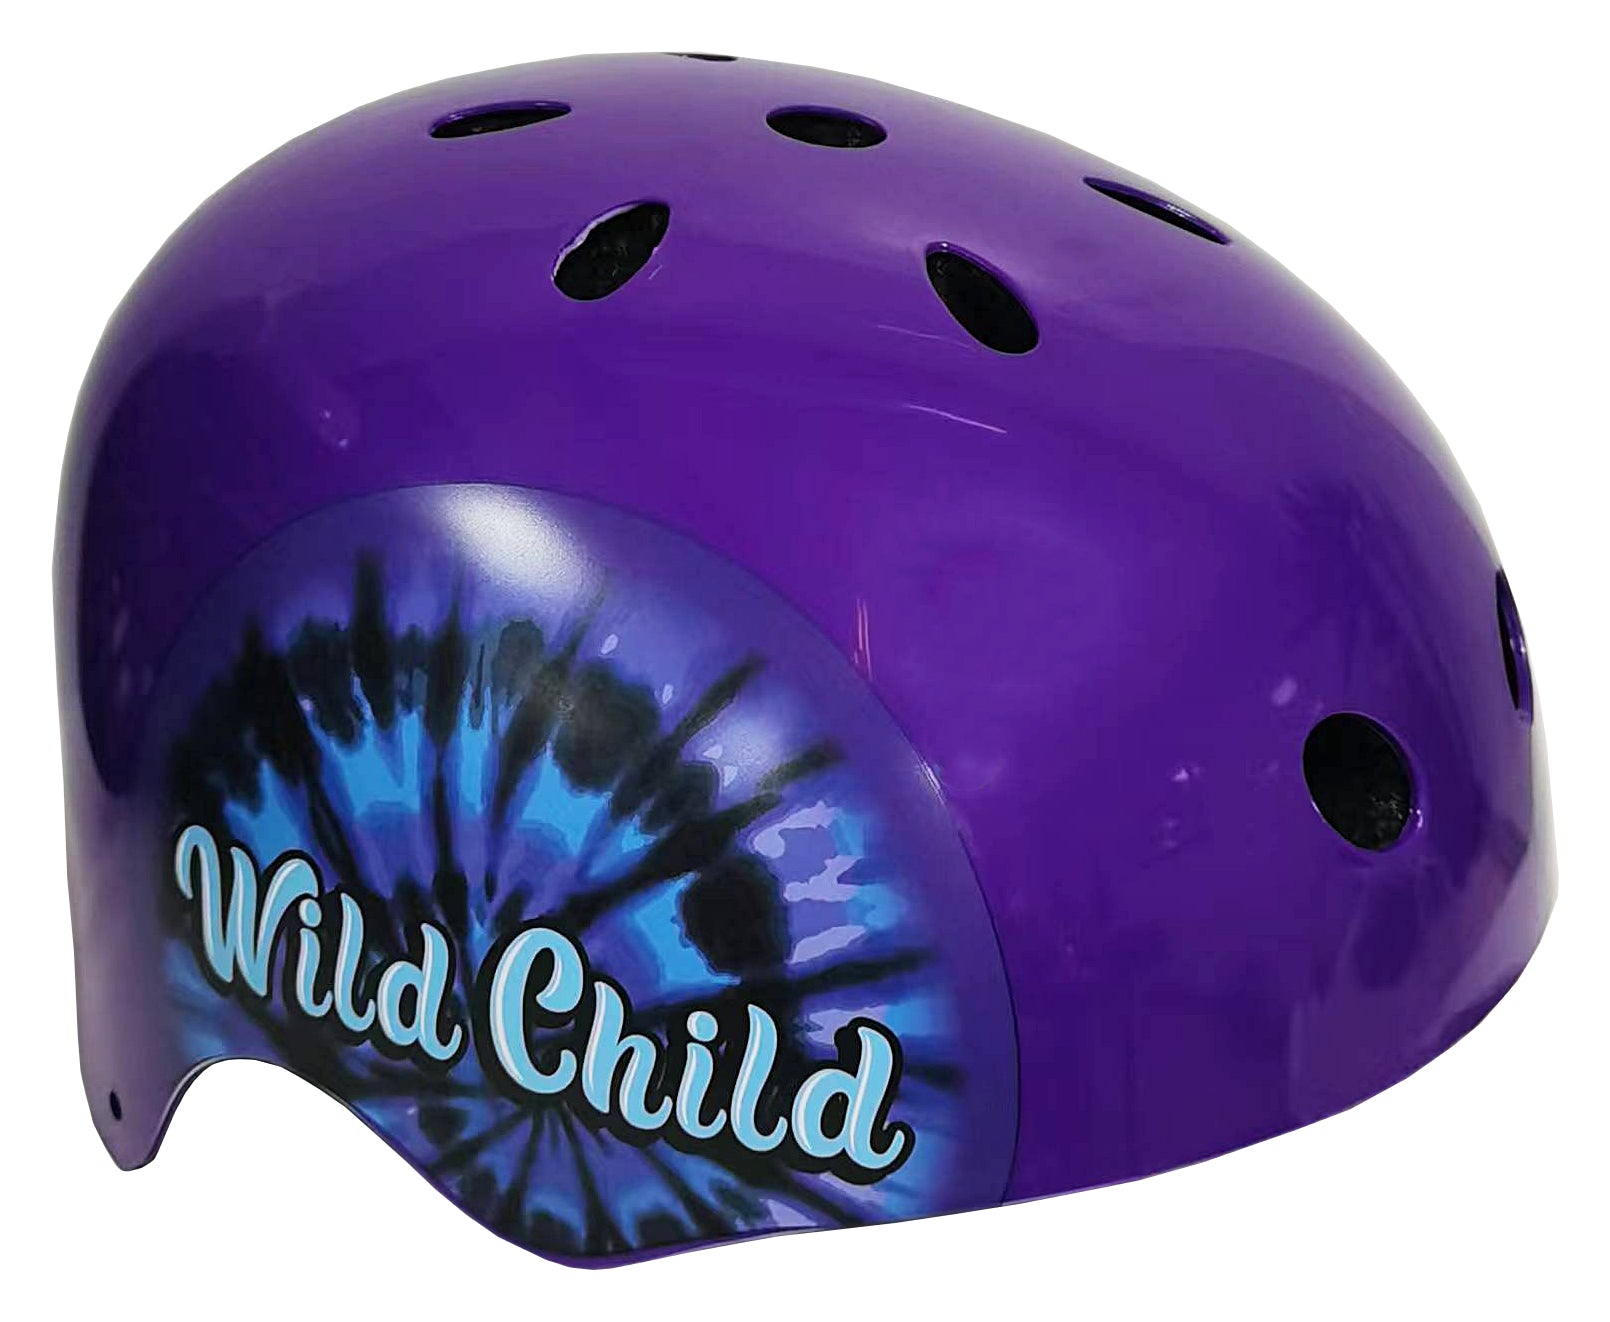 18" Wild Child Bike with Helmet